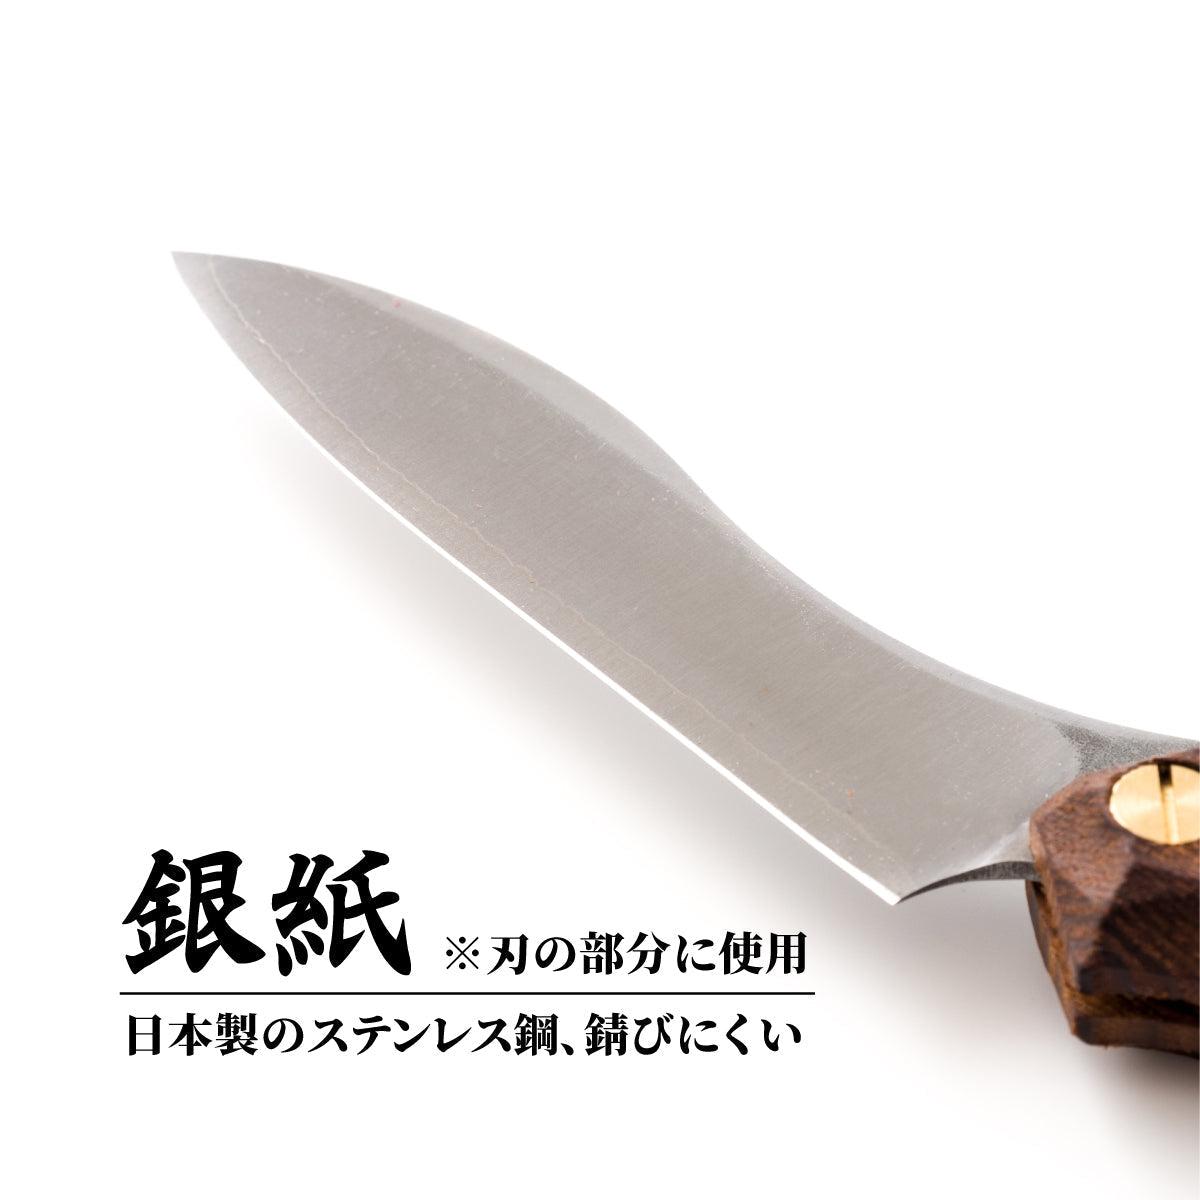 【NEW】折畳式料理ナイフ 名栗ビルマチーク (ステンレス鋼/銀紙三号) 9,900円